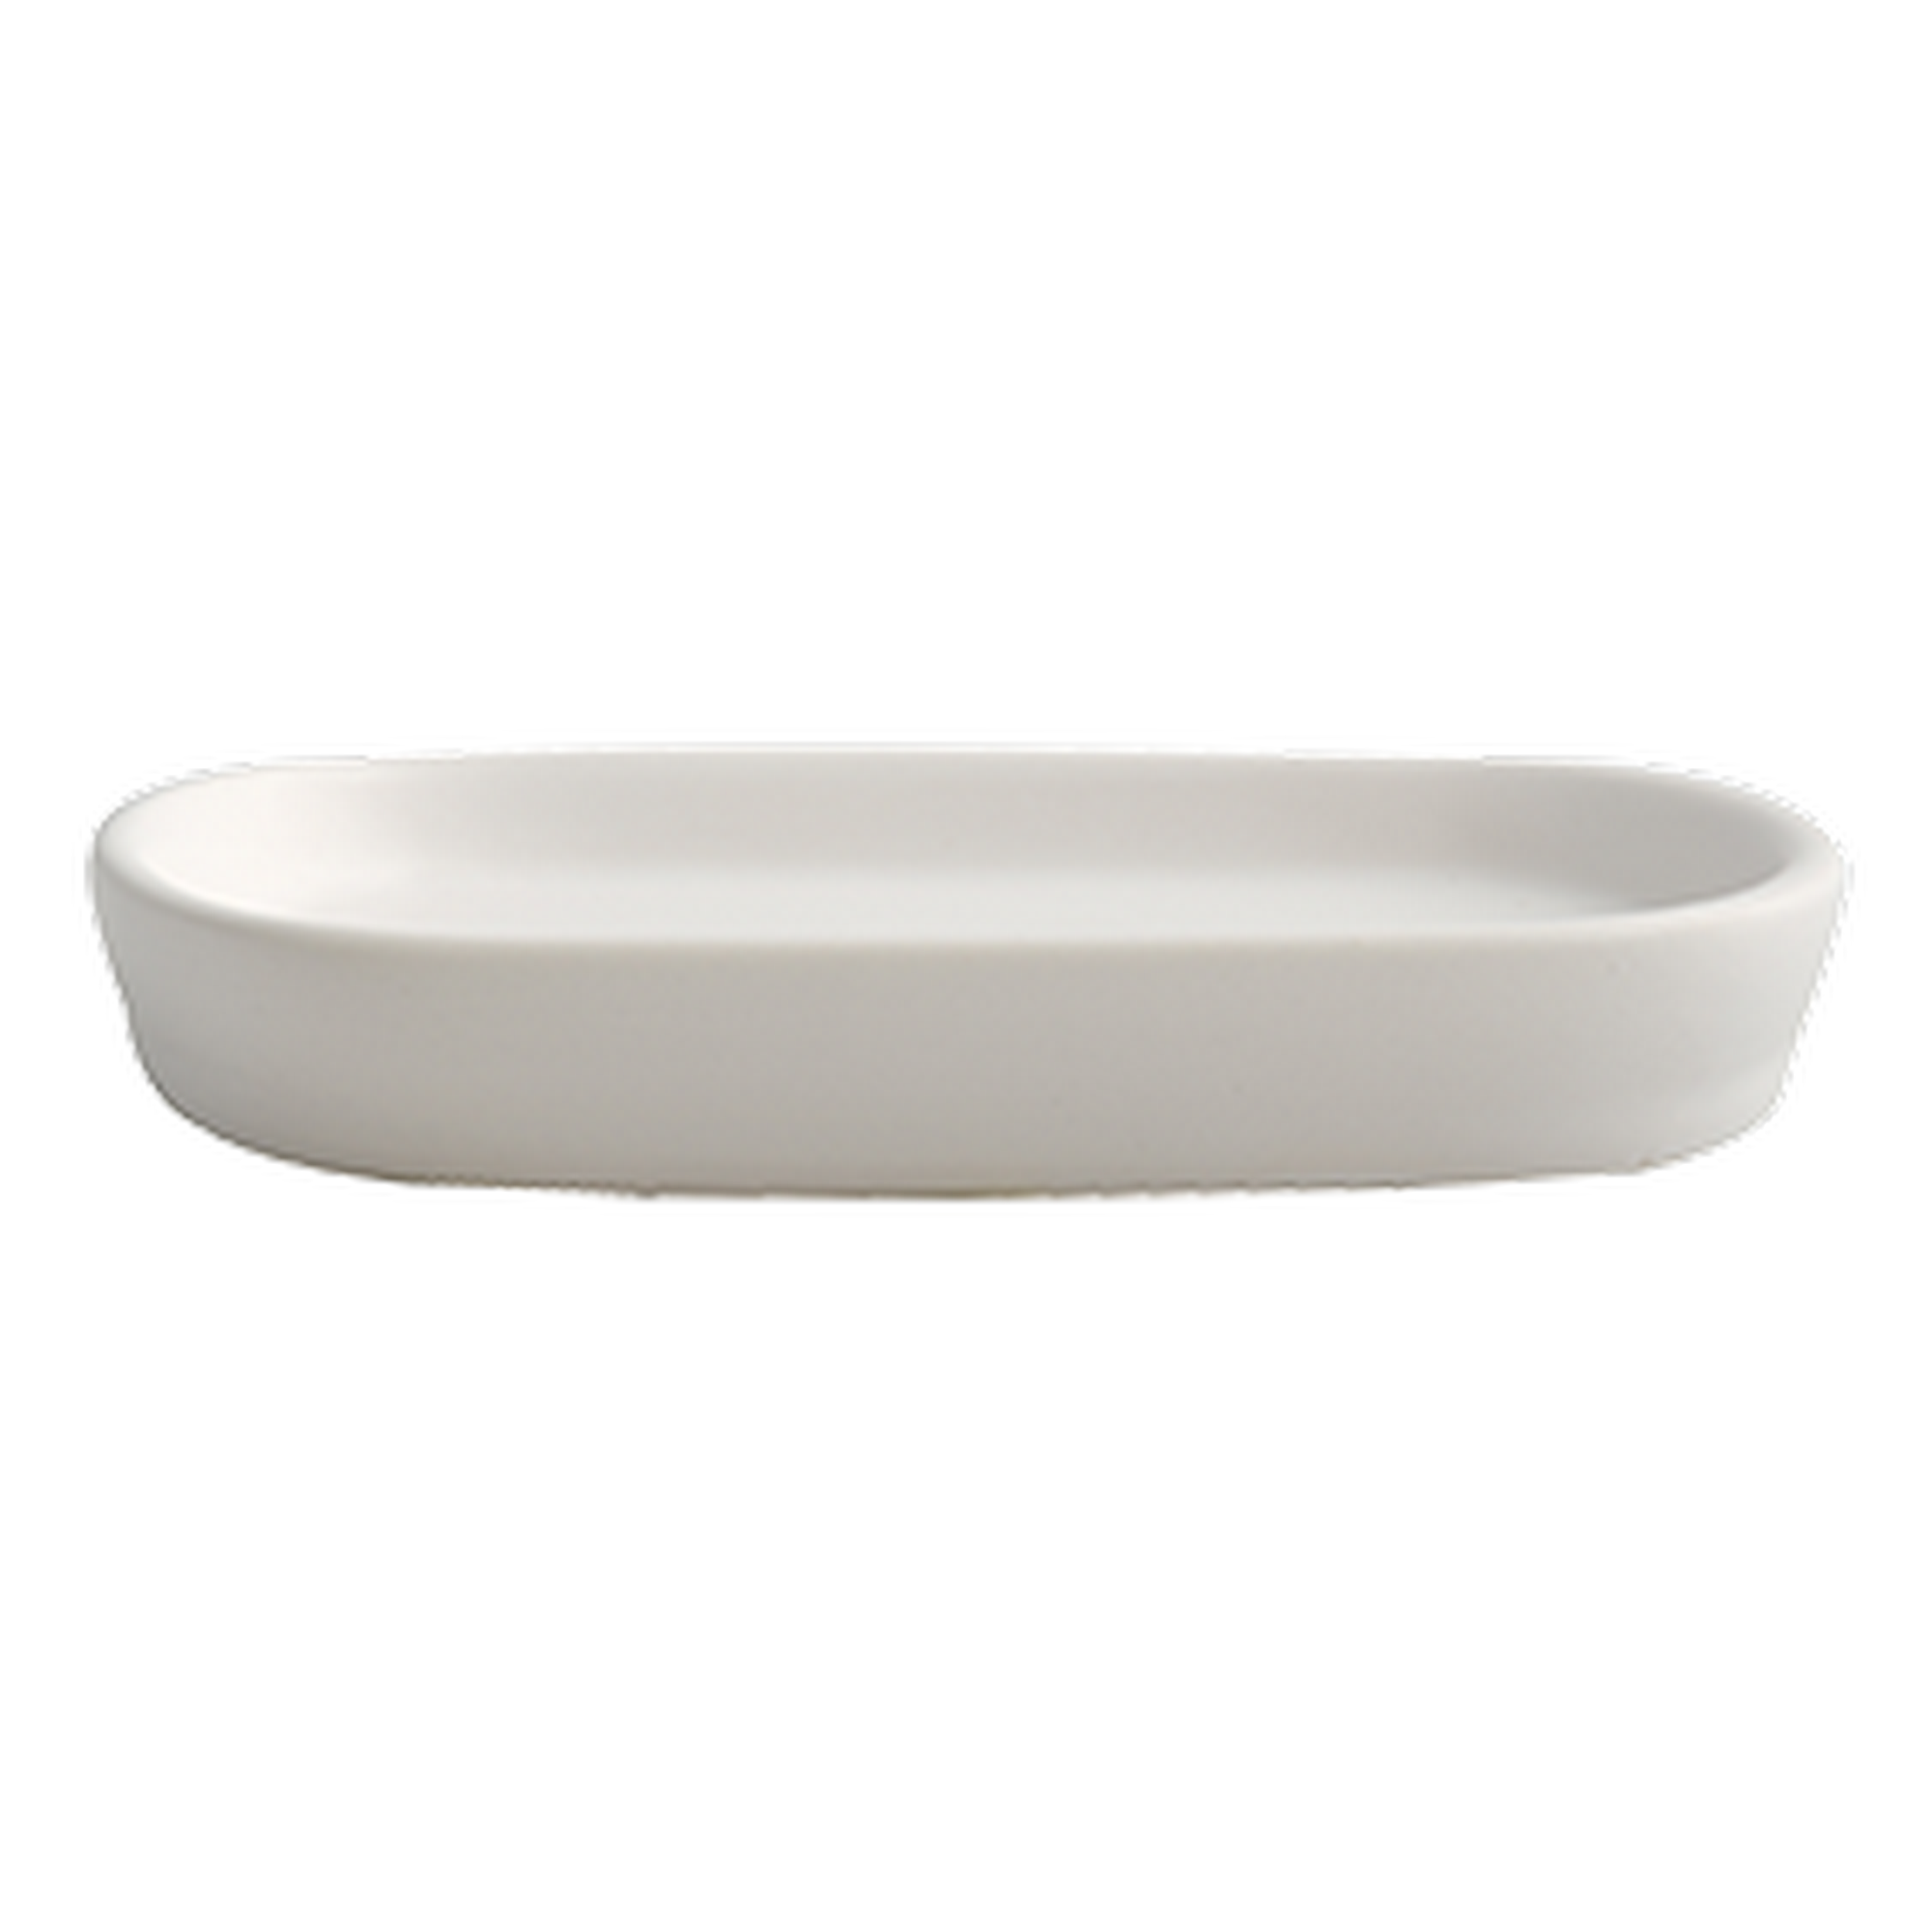 Seifenschale 'Maonie' Keramik weiß 13,4 x 8,7 x 2 cm + product picture